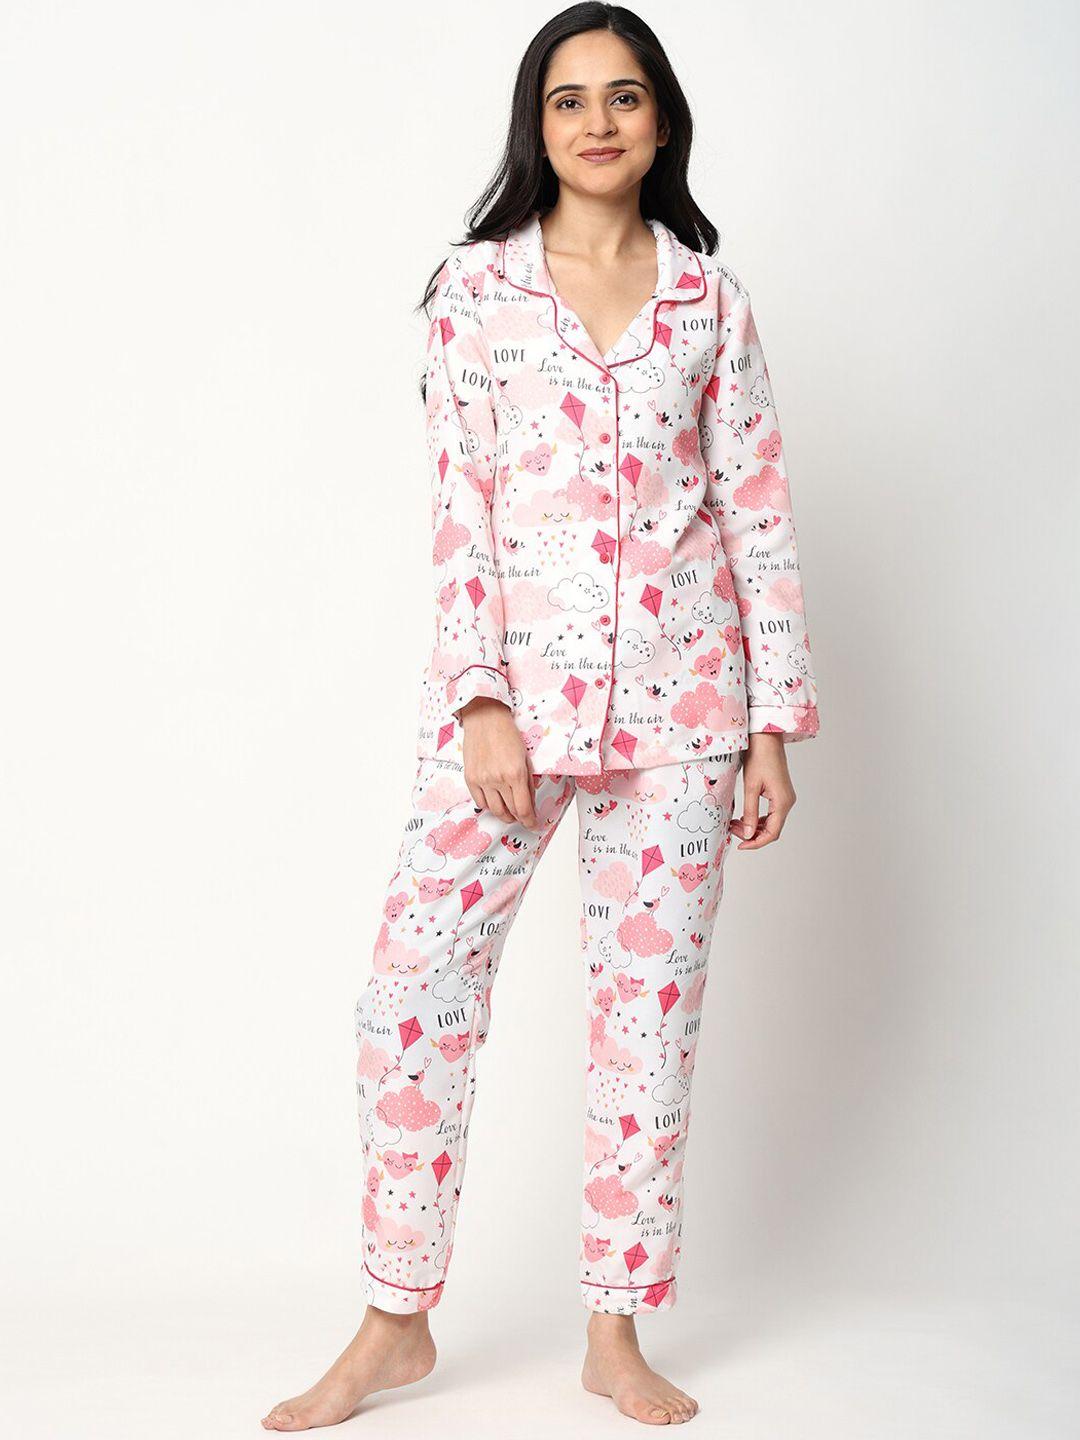 urban komfort printed cotton night suit